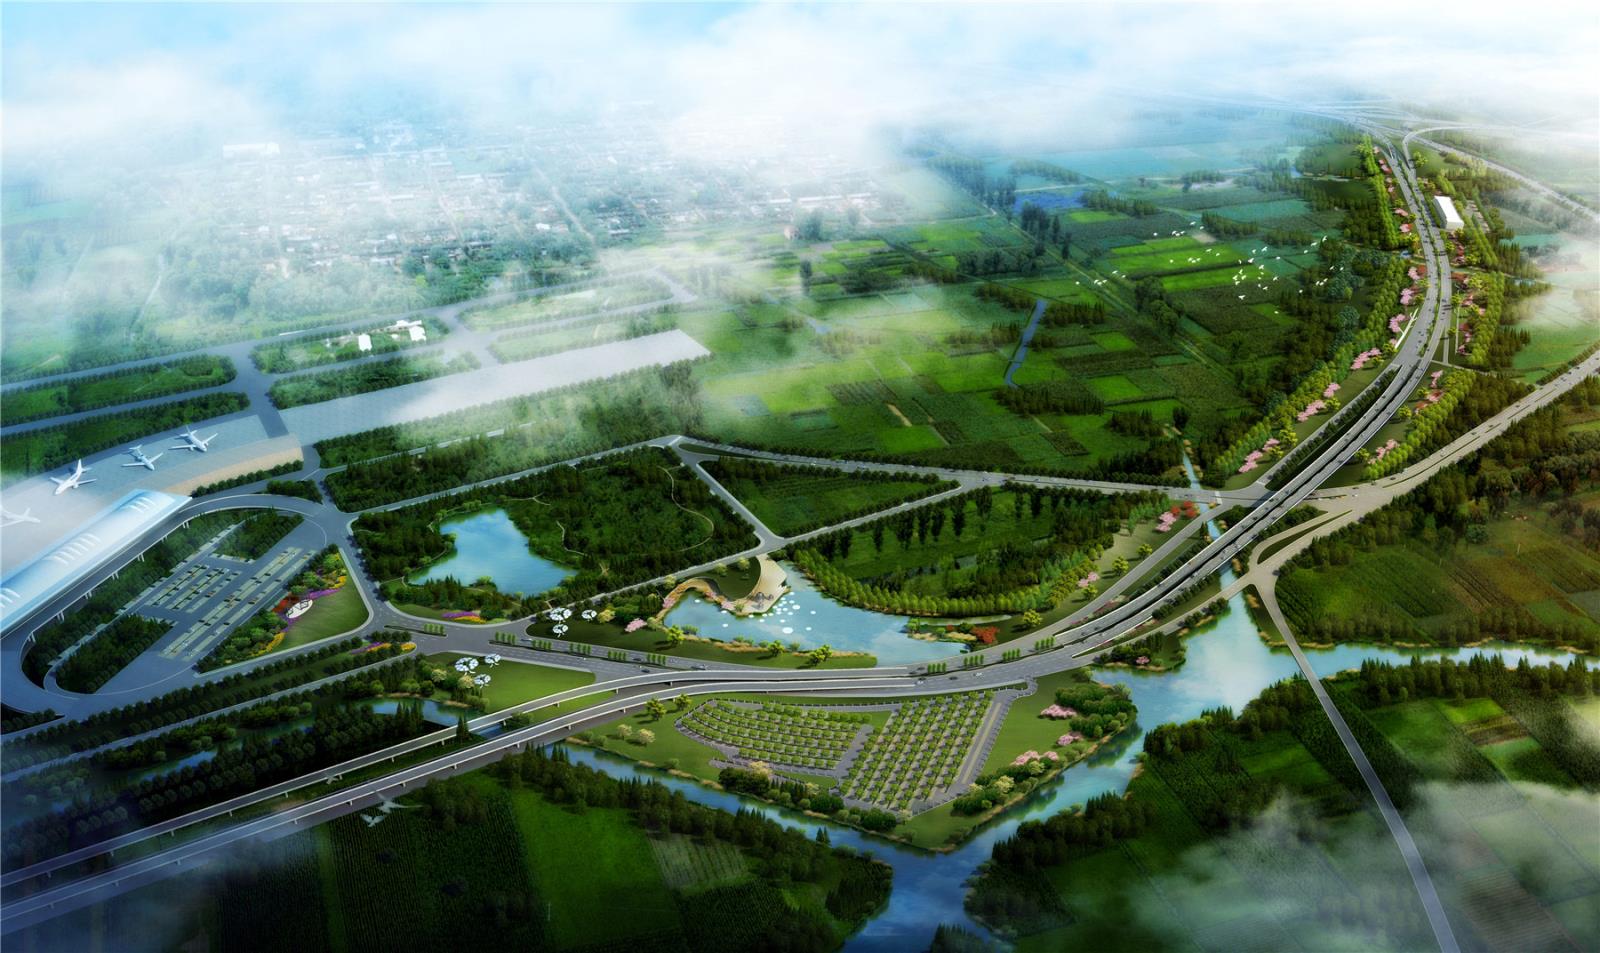 宁波机场门户区景观提升工程项目